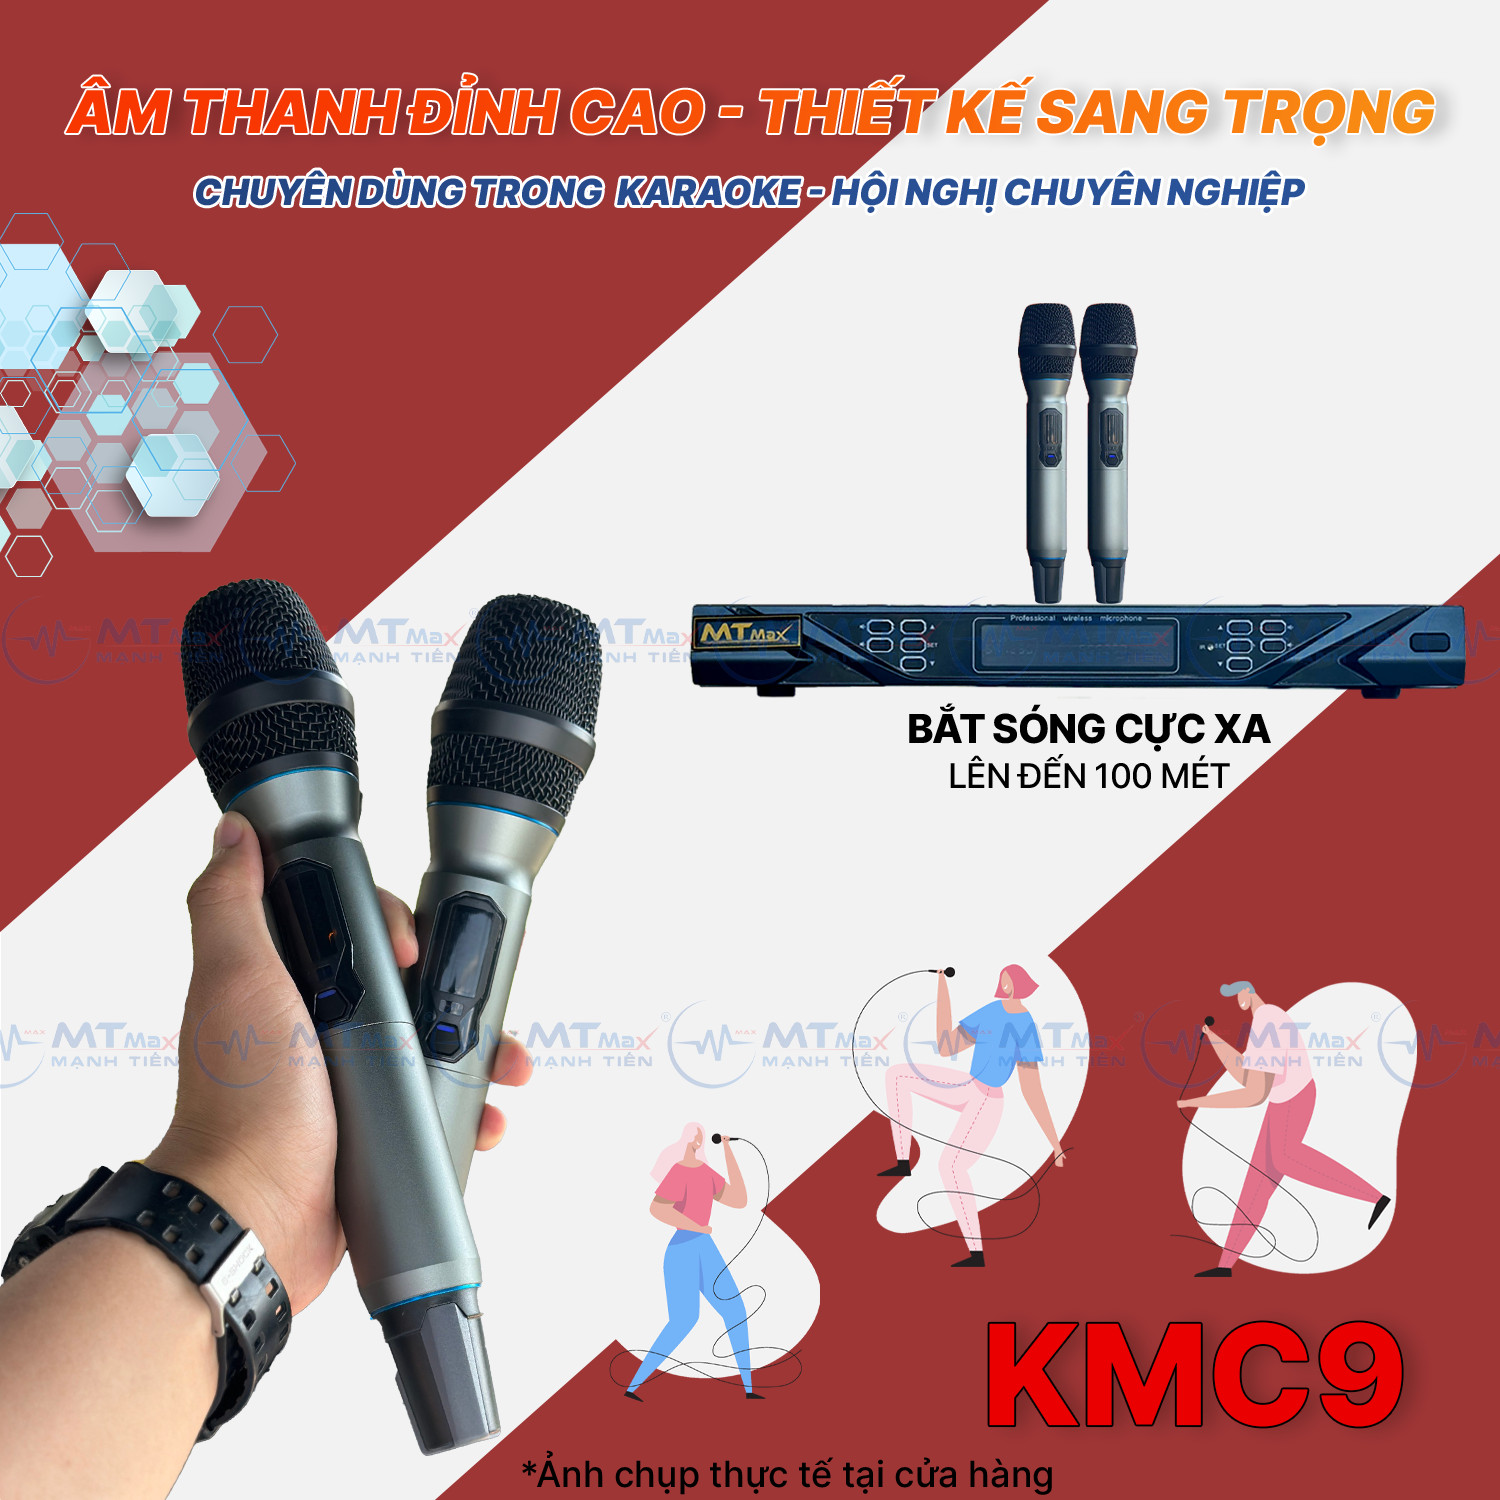 Micro Đầu Thu Lớn KMC9 - Siêu Phẩm Micro Đầu Thu Karaoke 2 Râu Cao Cấp Giá Rẻ, Lọc Âm, Nâng Giọng Chống Hú Rè Cực Tốt Bắt Sóng Xa Đến 30m hàng chính hãng